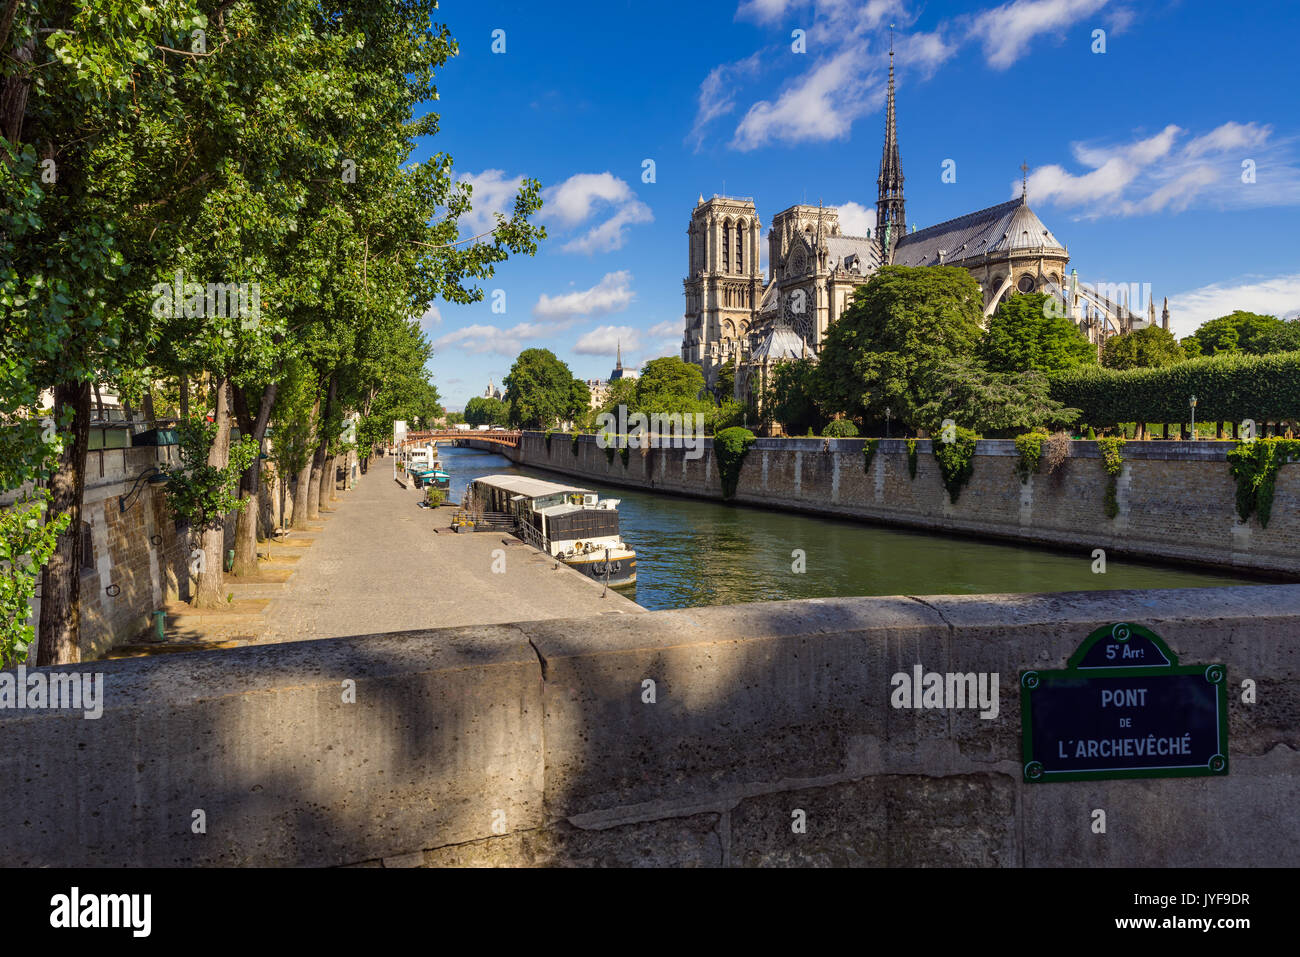 Notre Dame de Paris cathedral on Ile de La Cite with the Seine River in summer. Pont de l'Archeveche, Paris, France Stock Photo